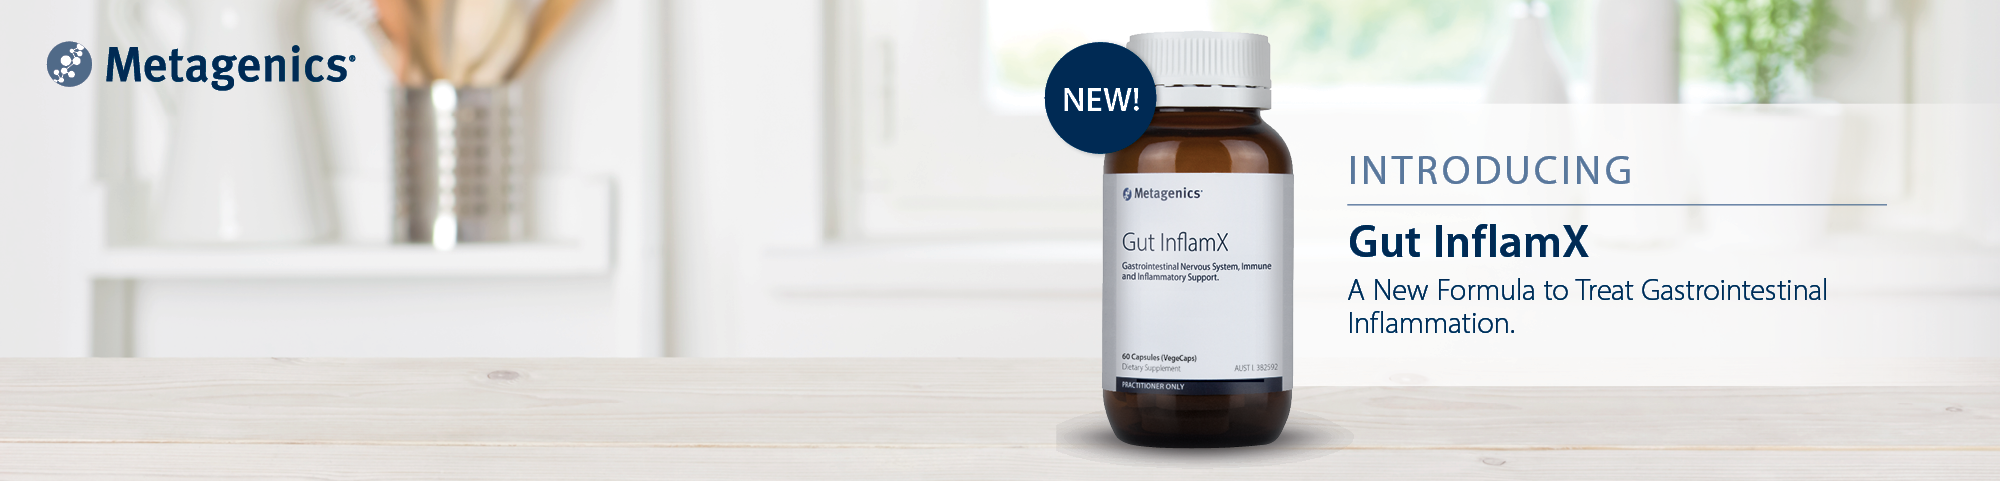 Introducing Gut InflamX